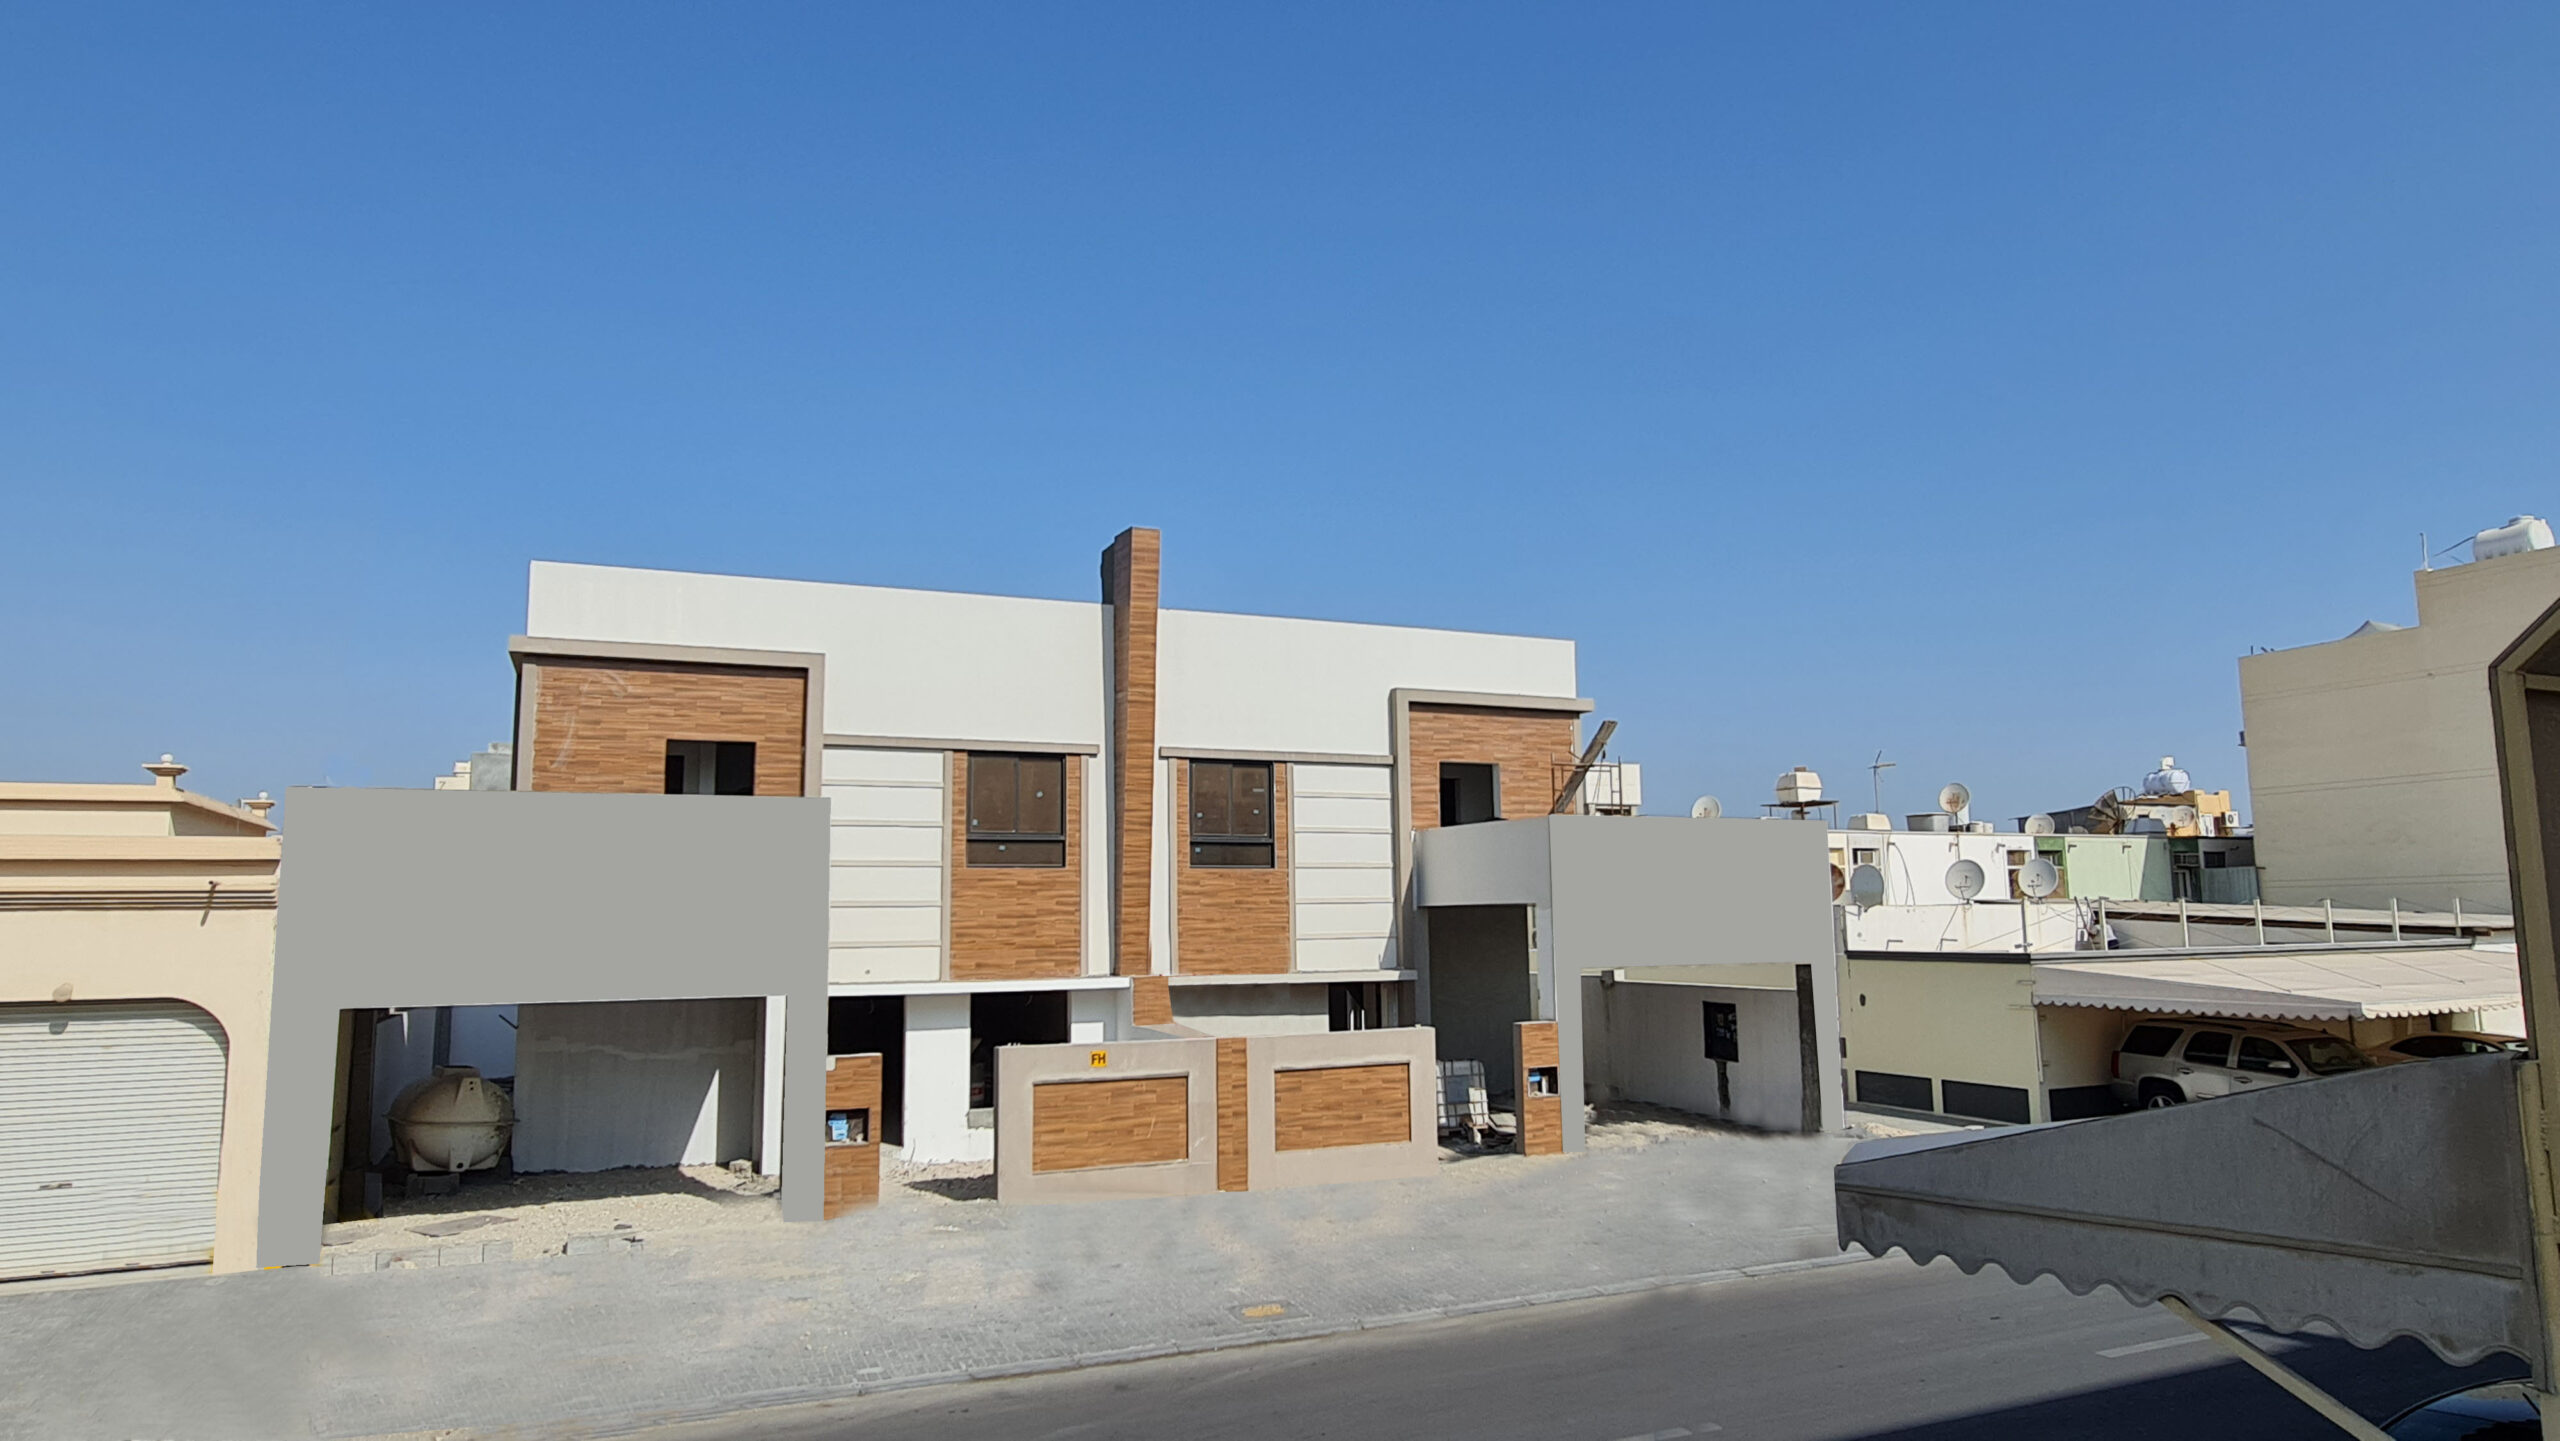 للبيع ثلاث فلل سكنية جديدة تتكون من أربع غرف نوم بمنطقة مدينة عيسى مناسبة للسكن الاجتماعي